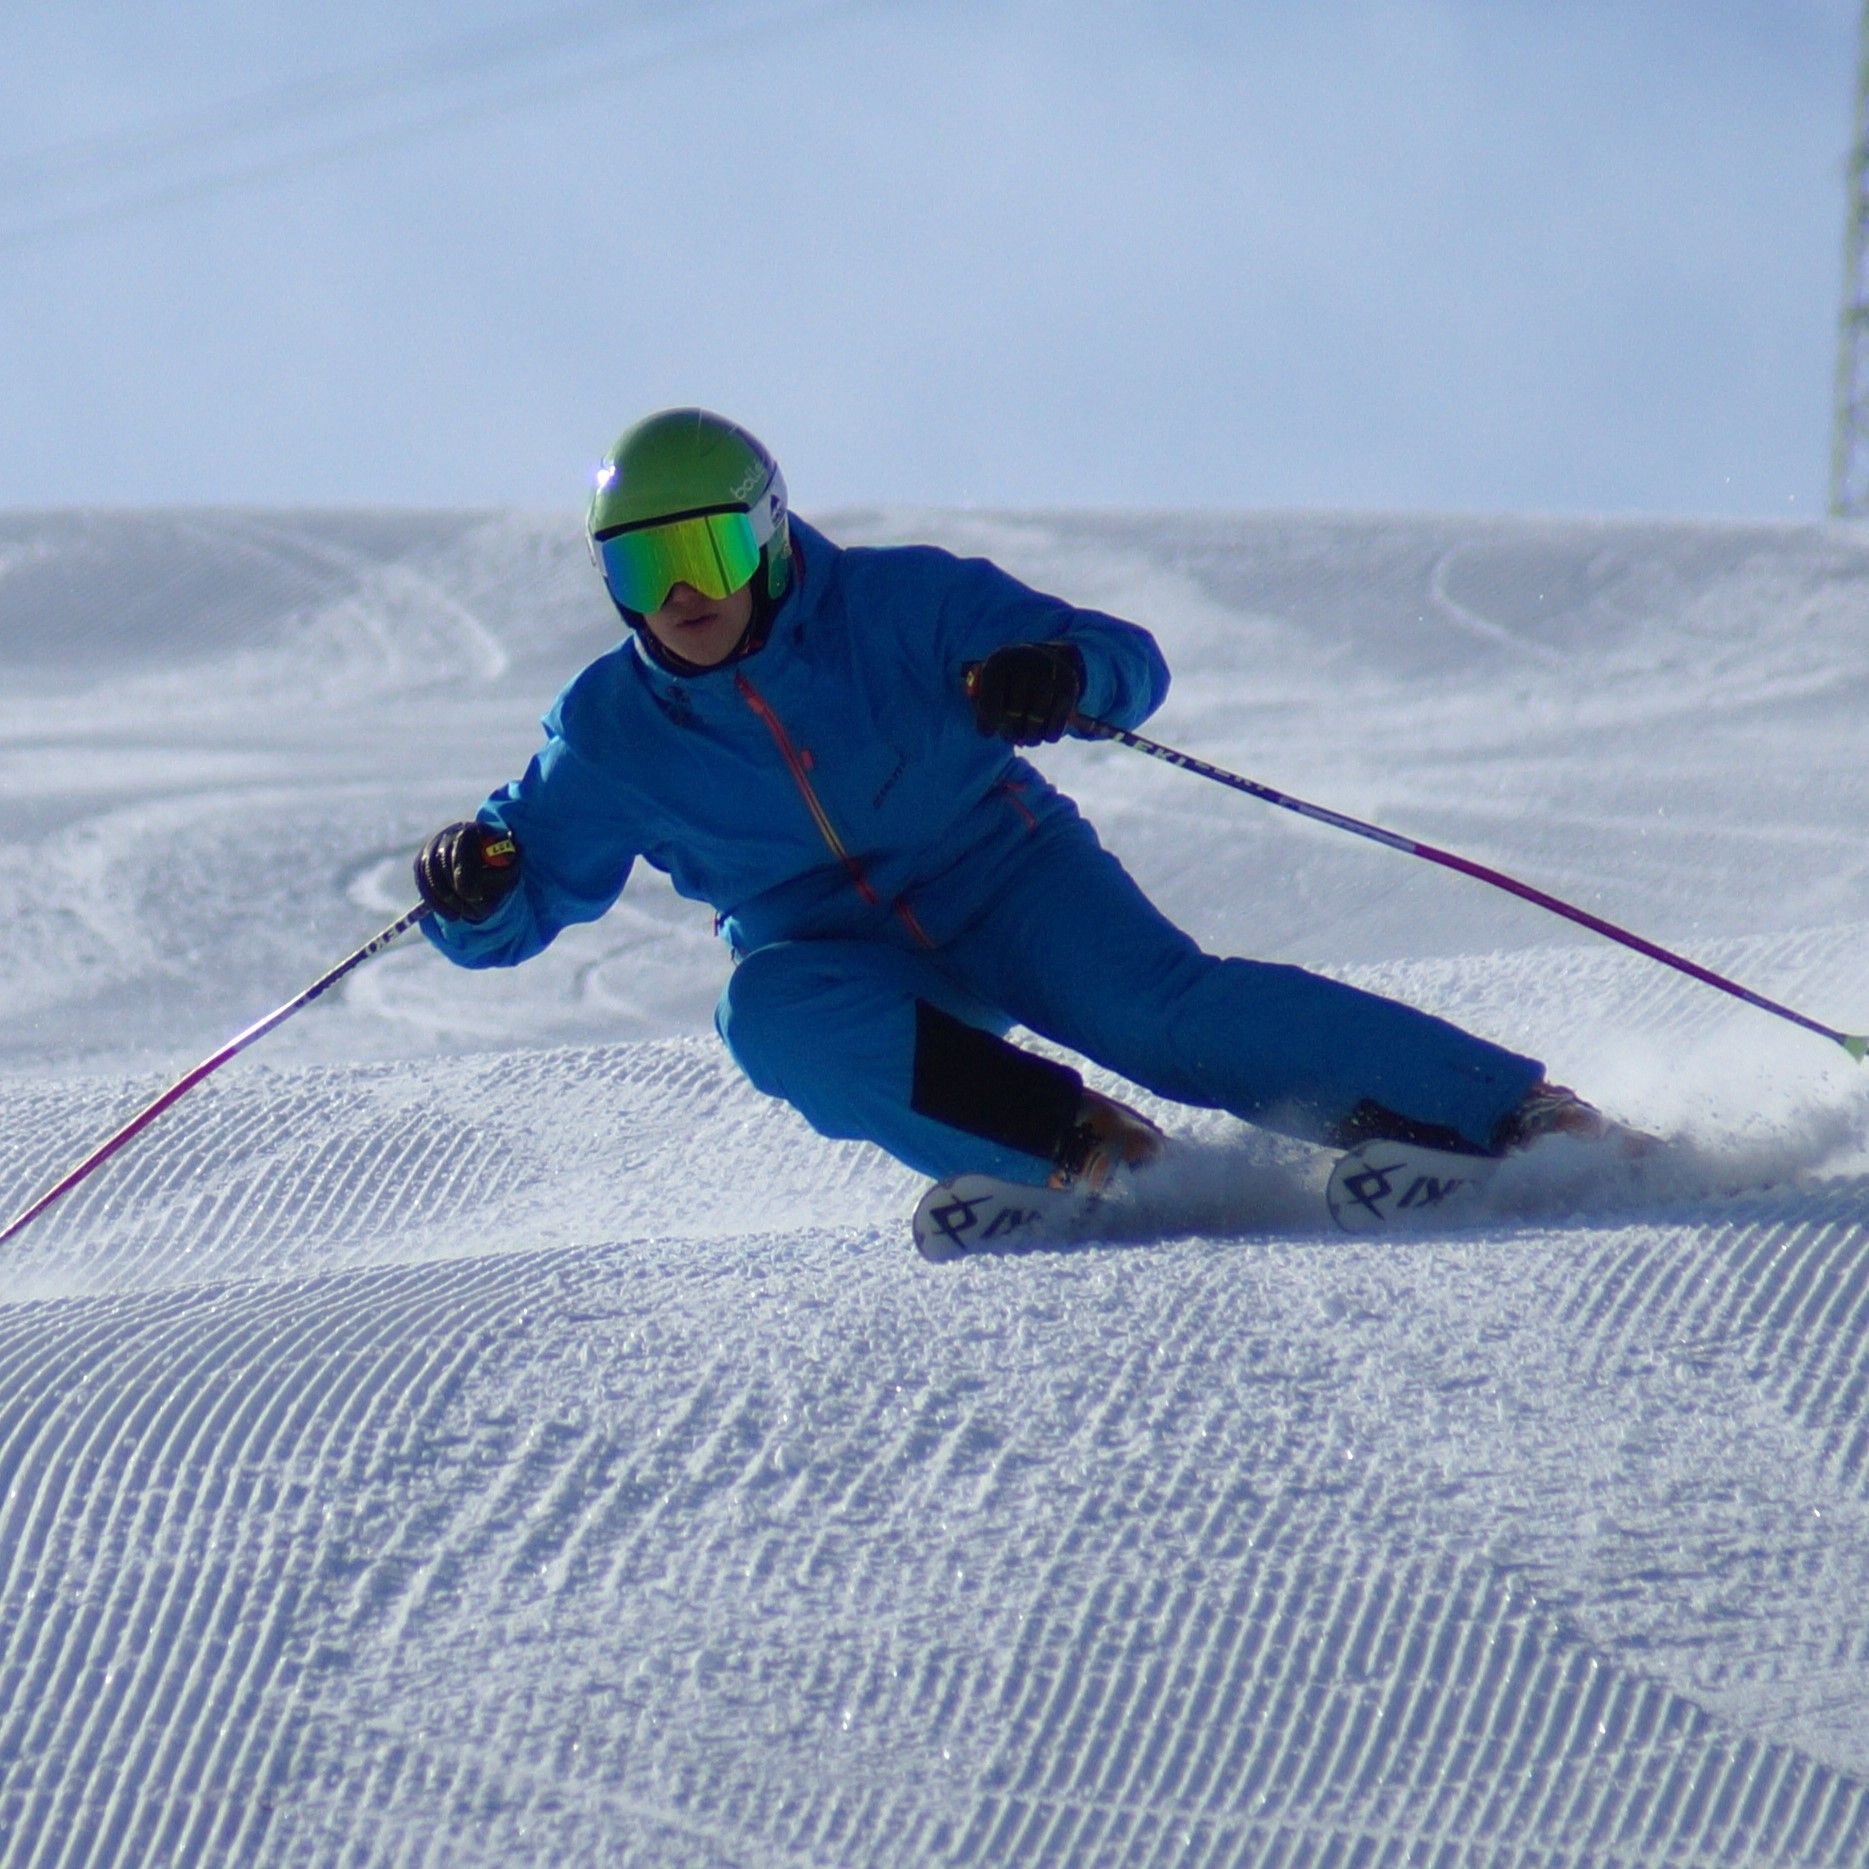 Aleš Najman ski